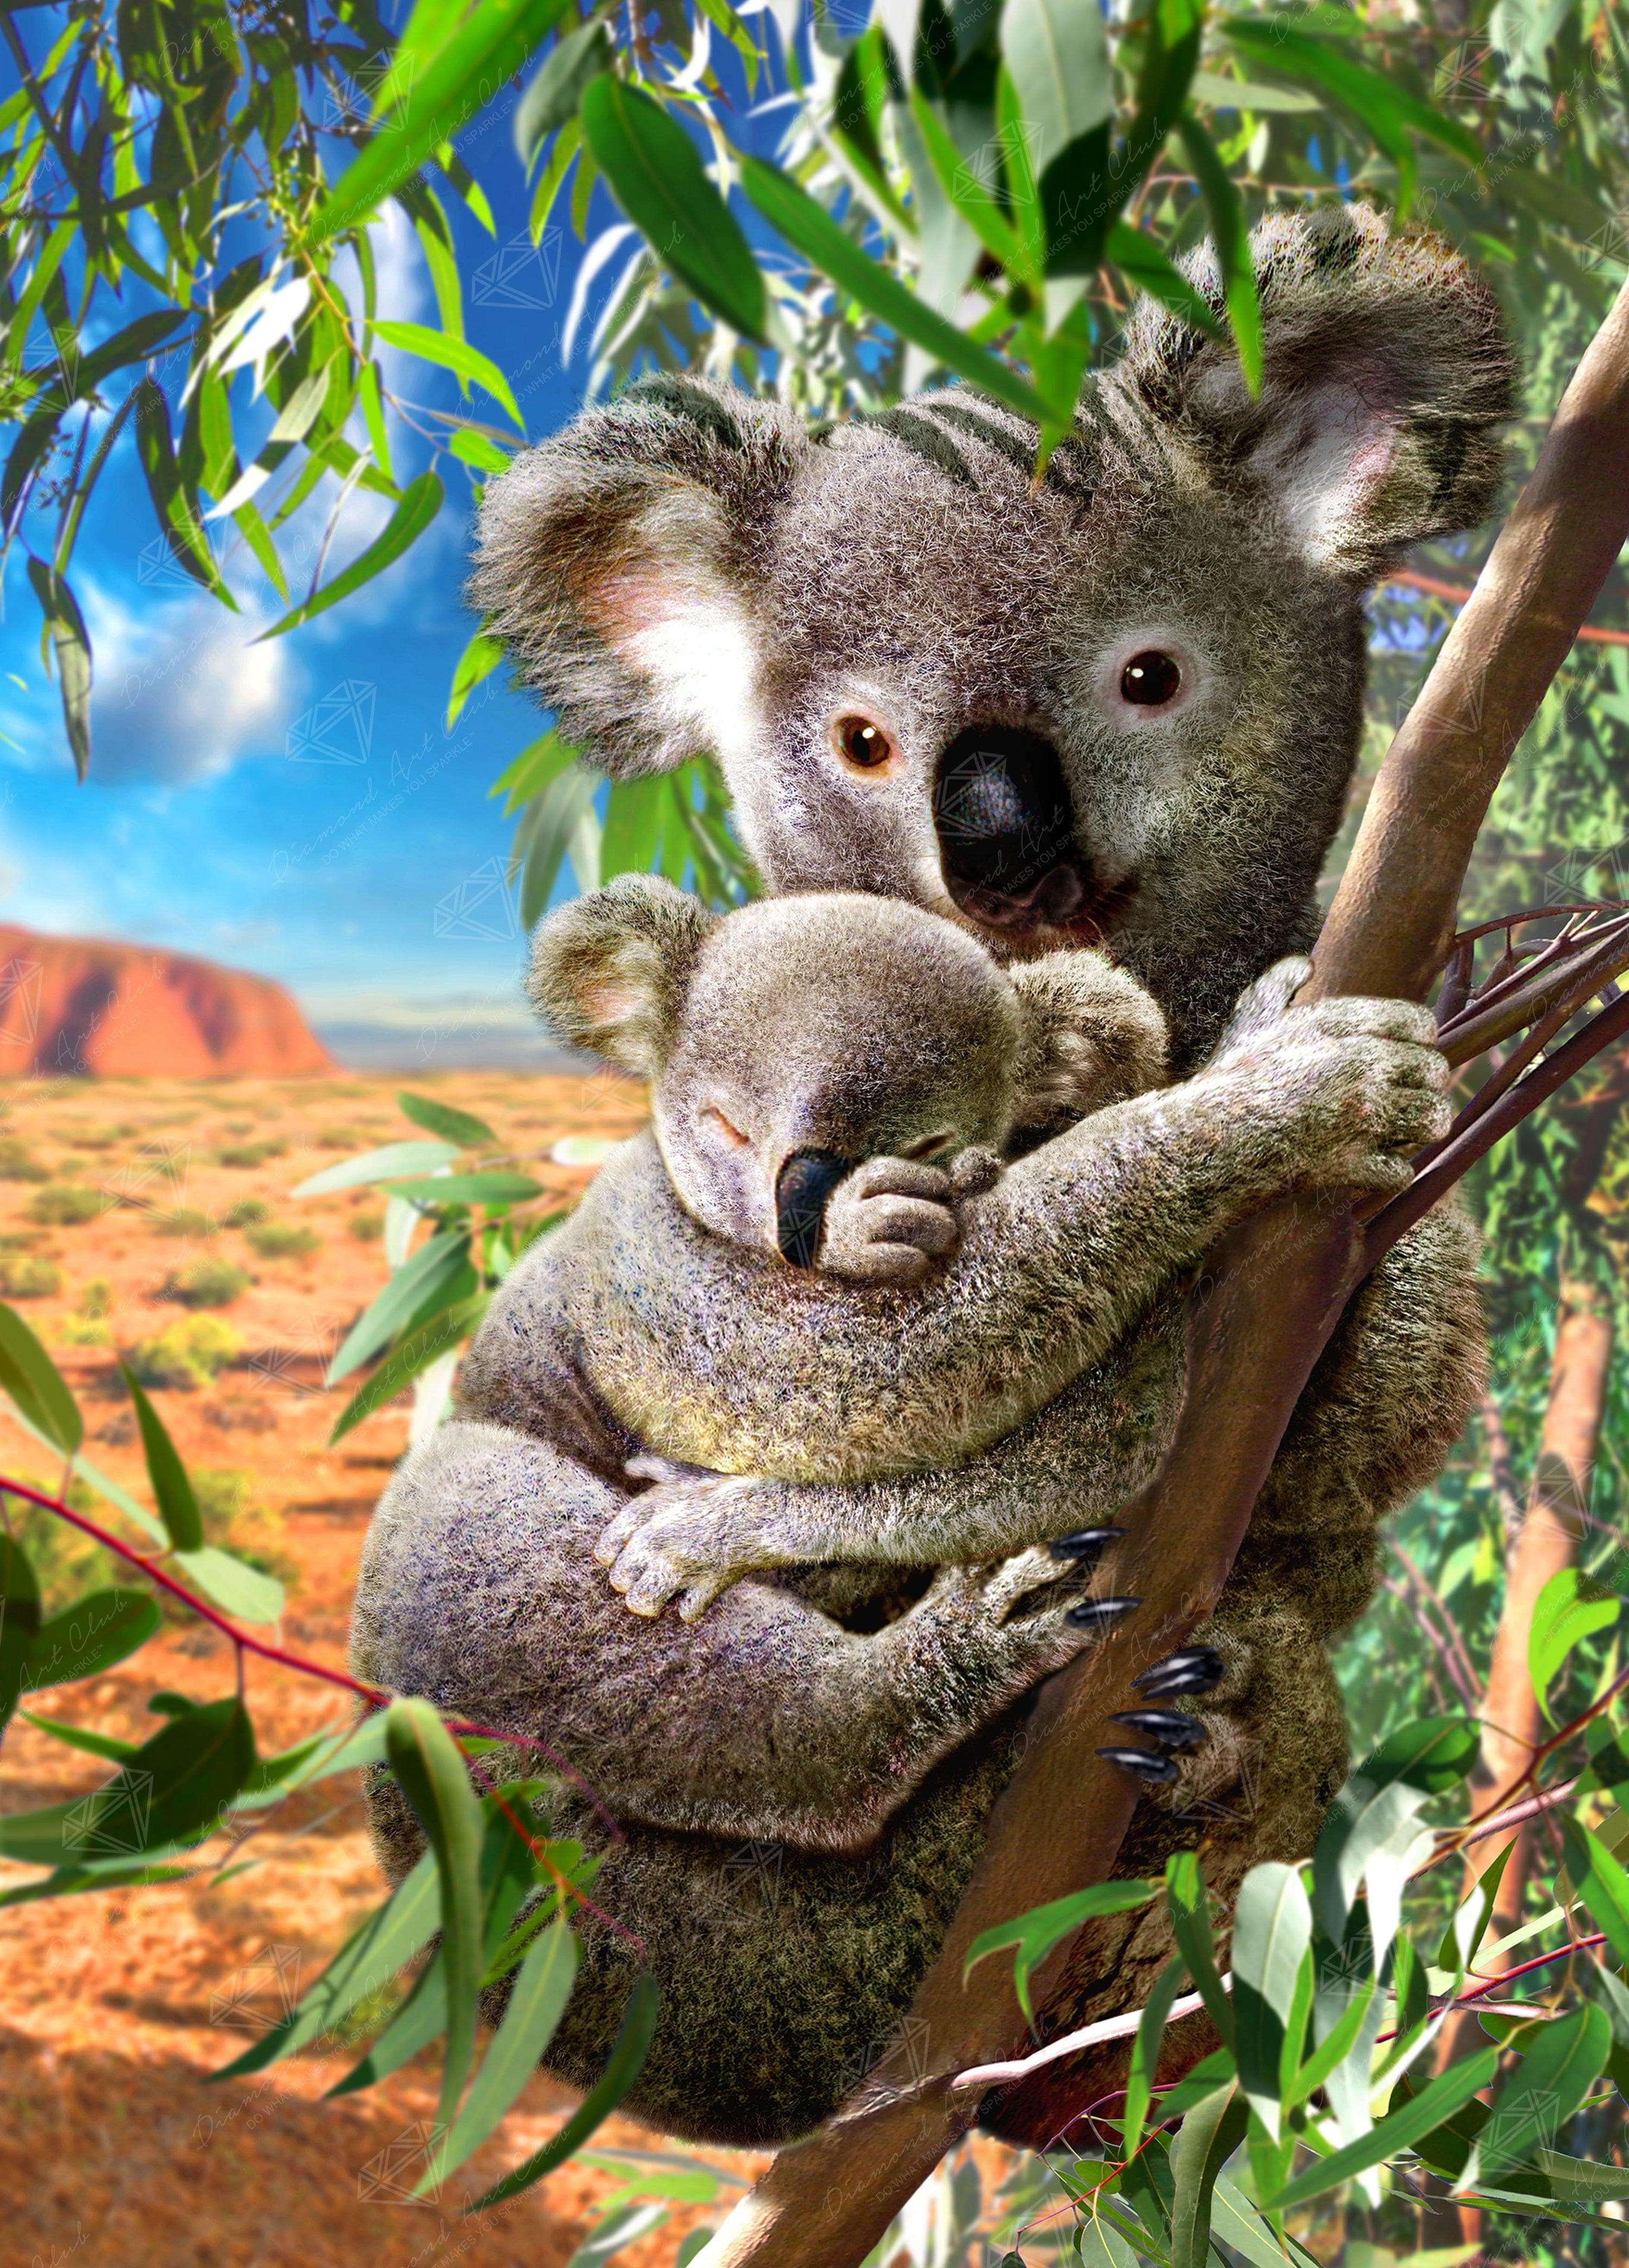 Koala Bear And Baby - 5D Diamond Painting 